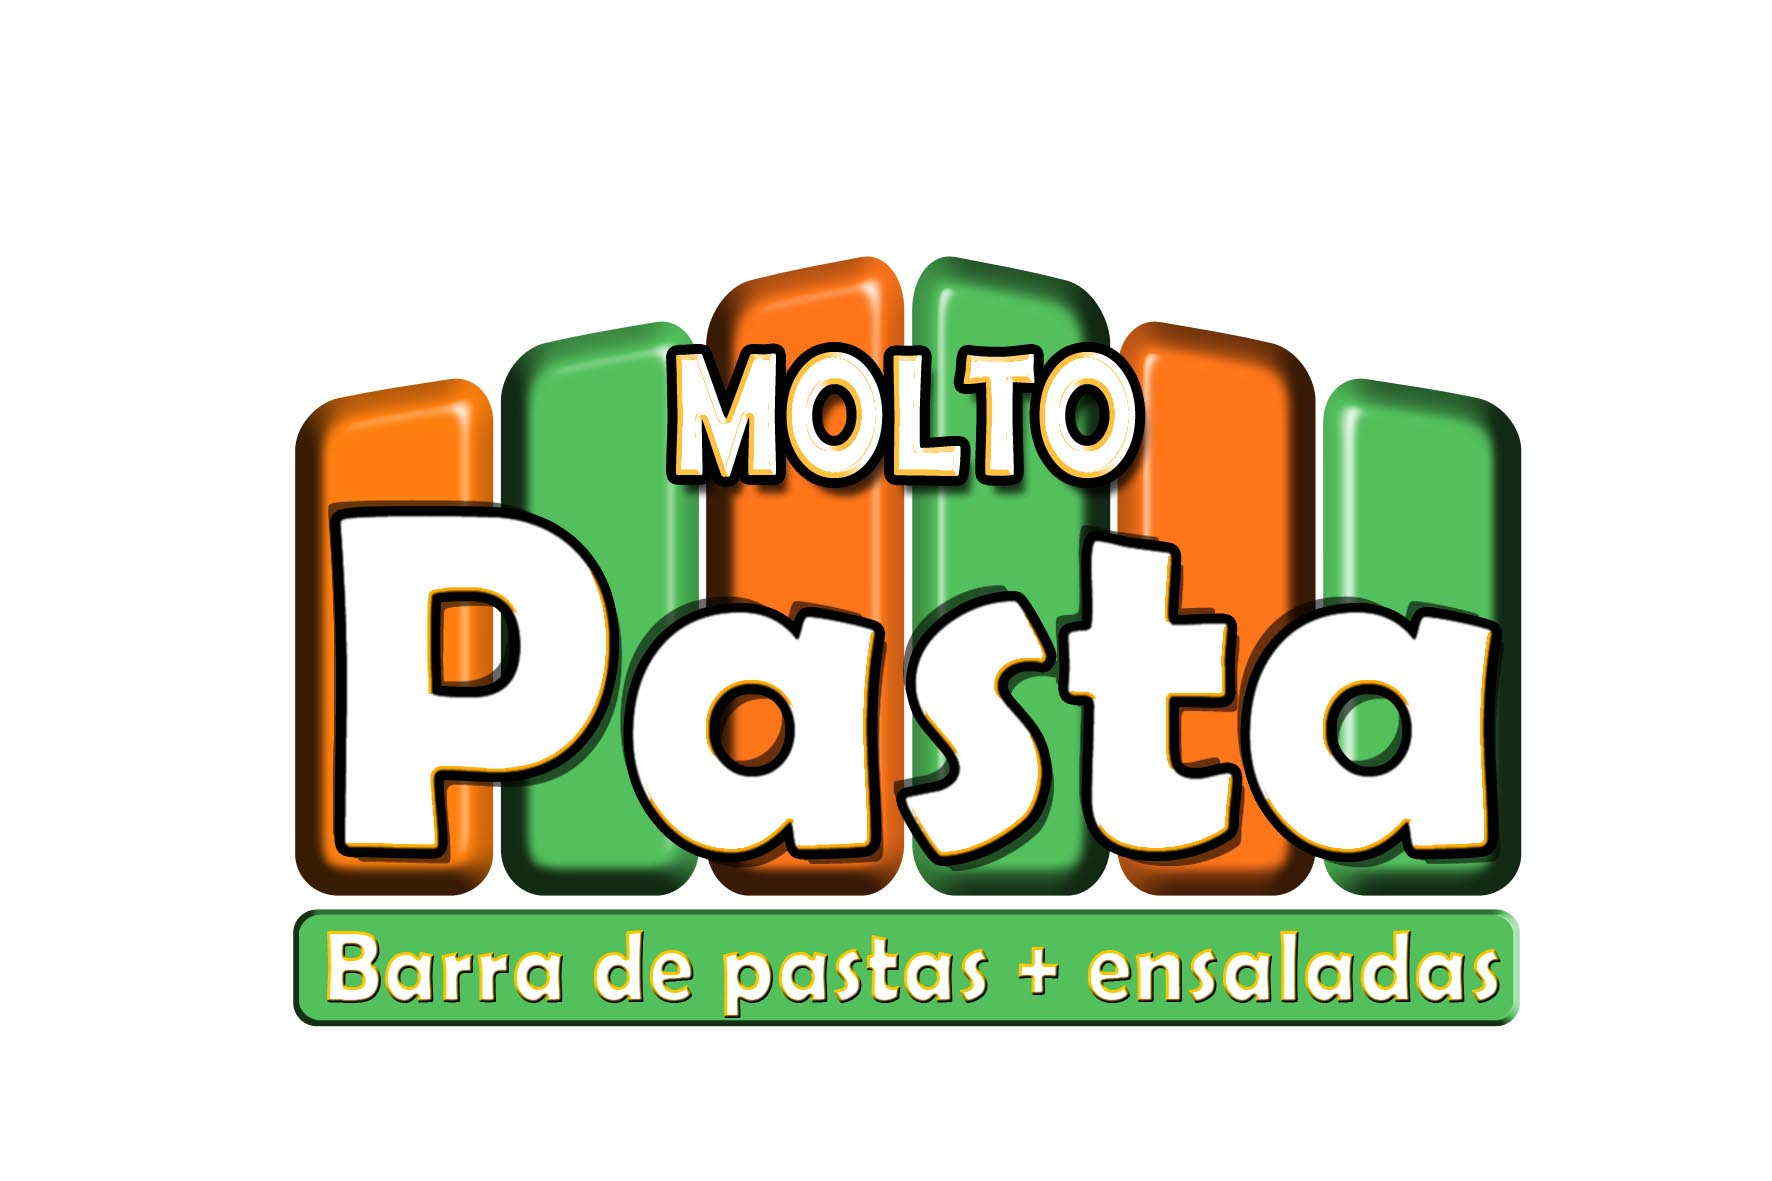 Molto Pasta-Barra de pastas y ensaladas
Armala de pasta    